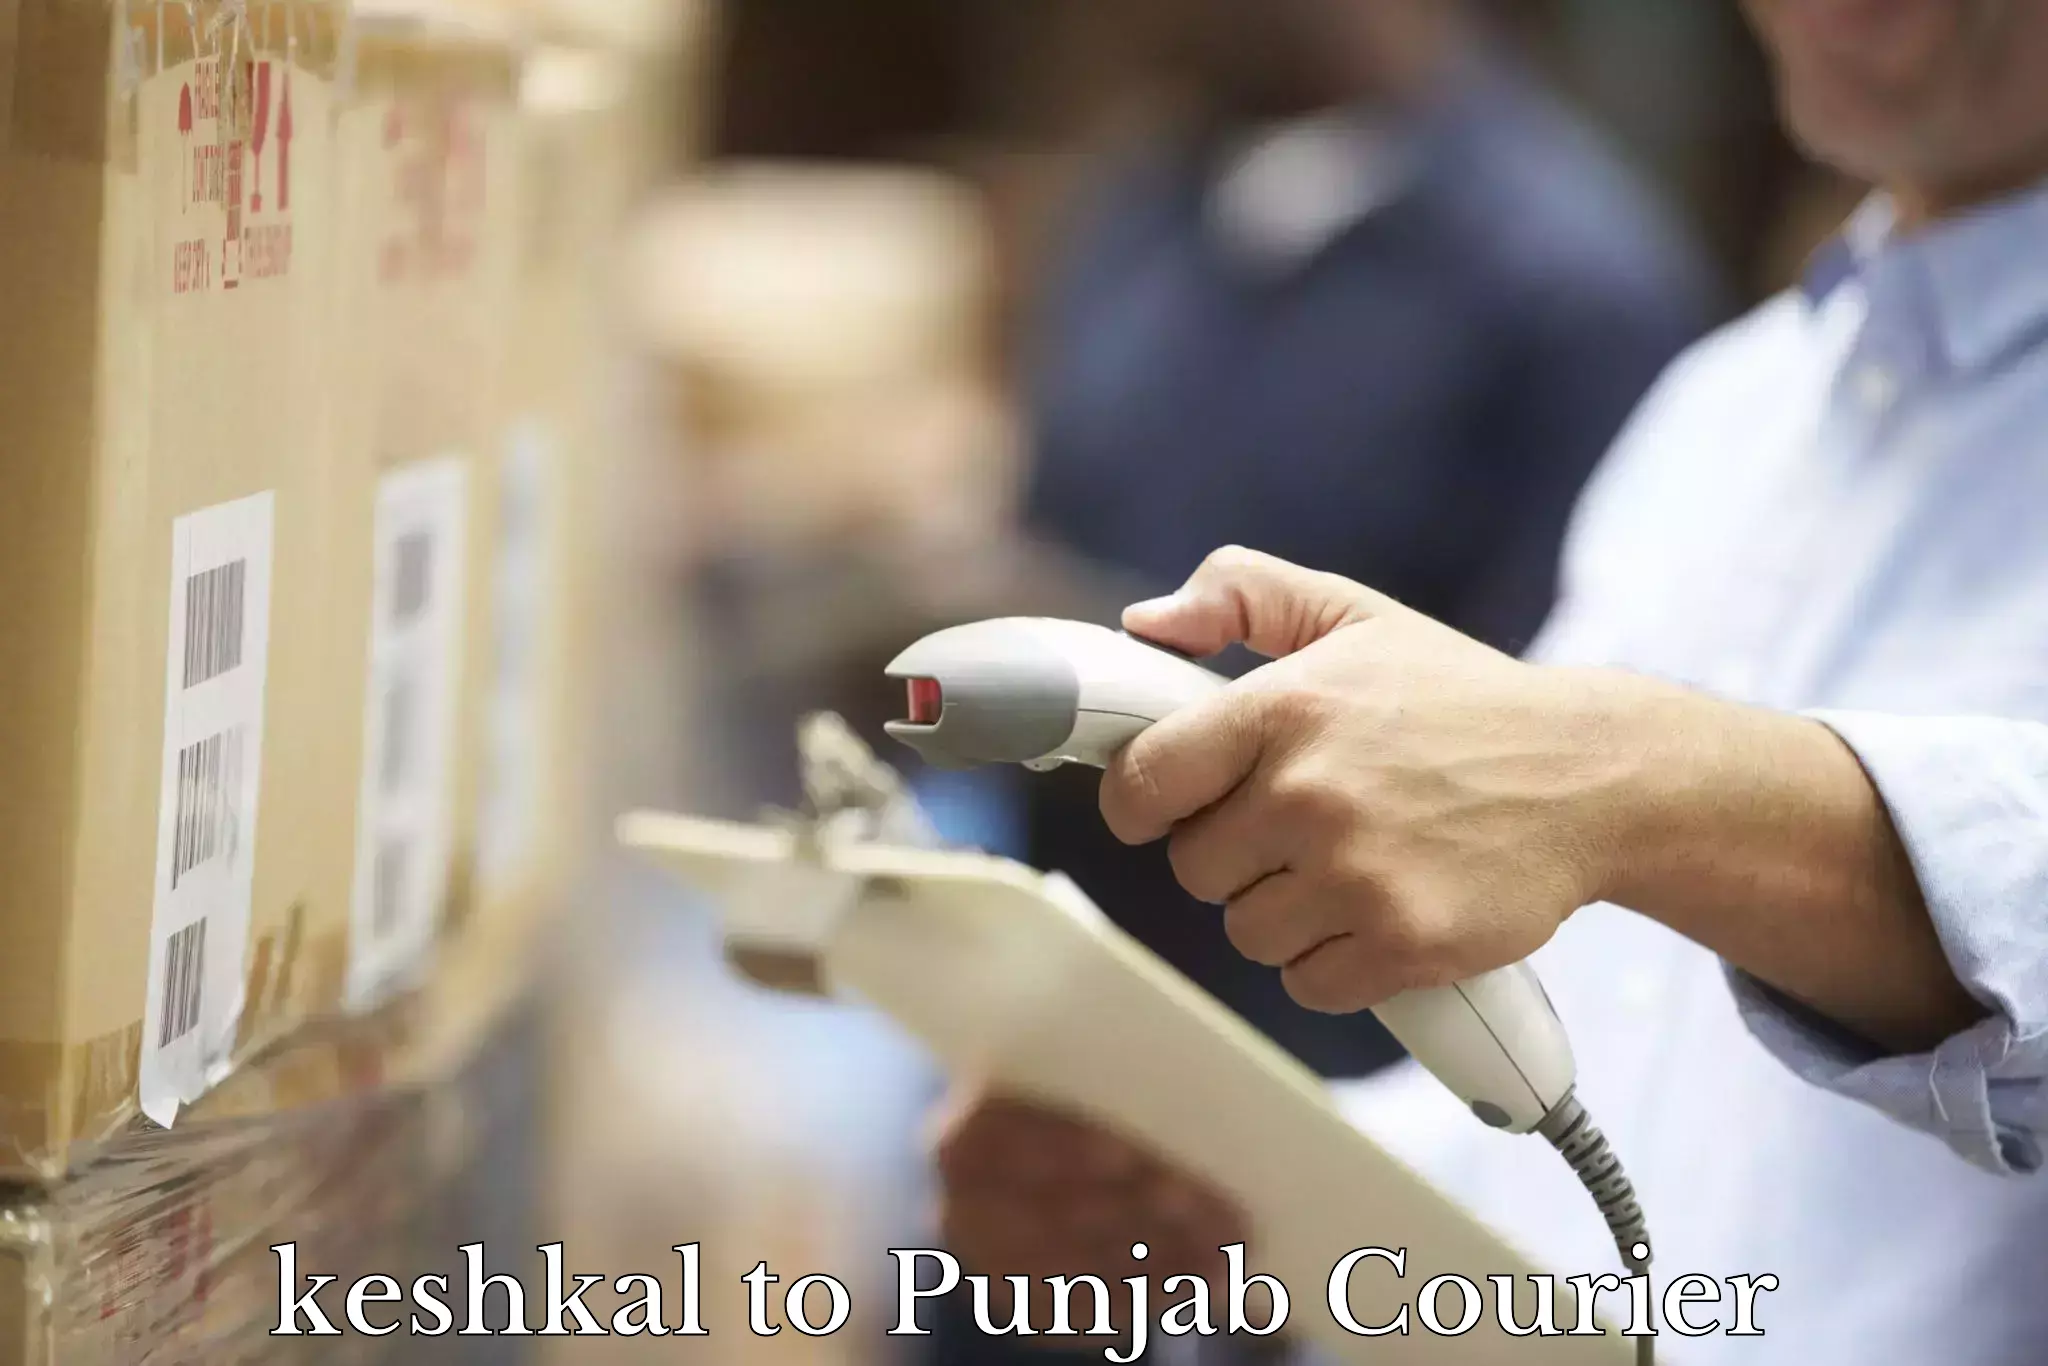 Expedited shipping methods keshkal to Talwara